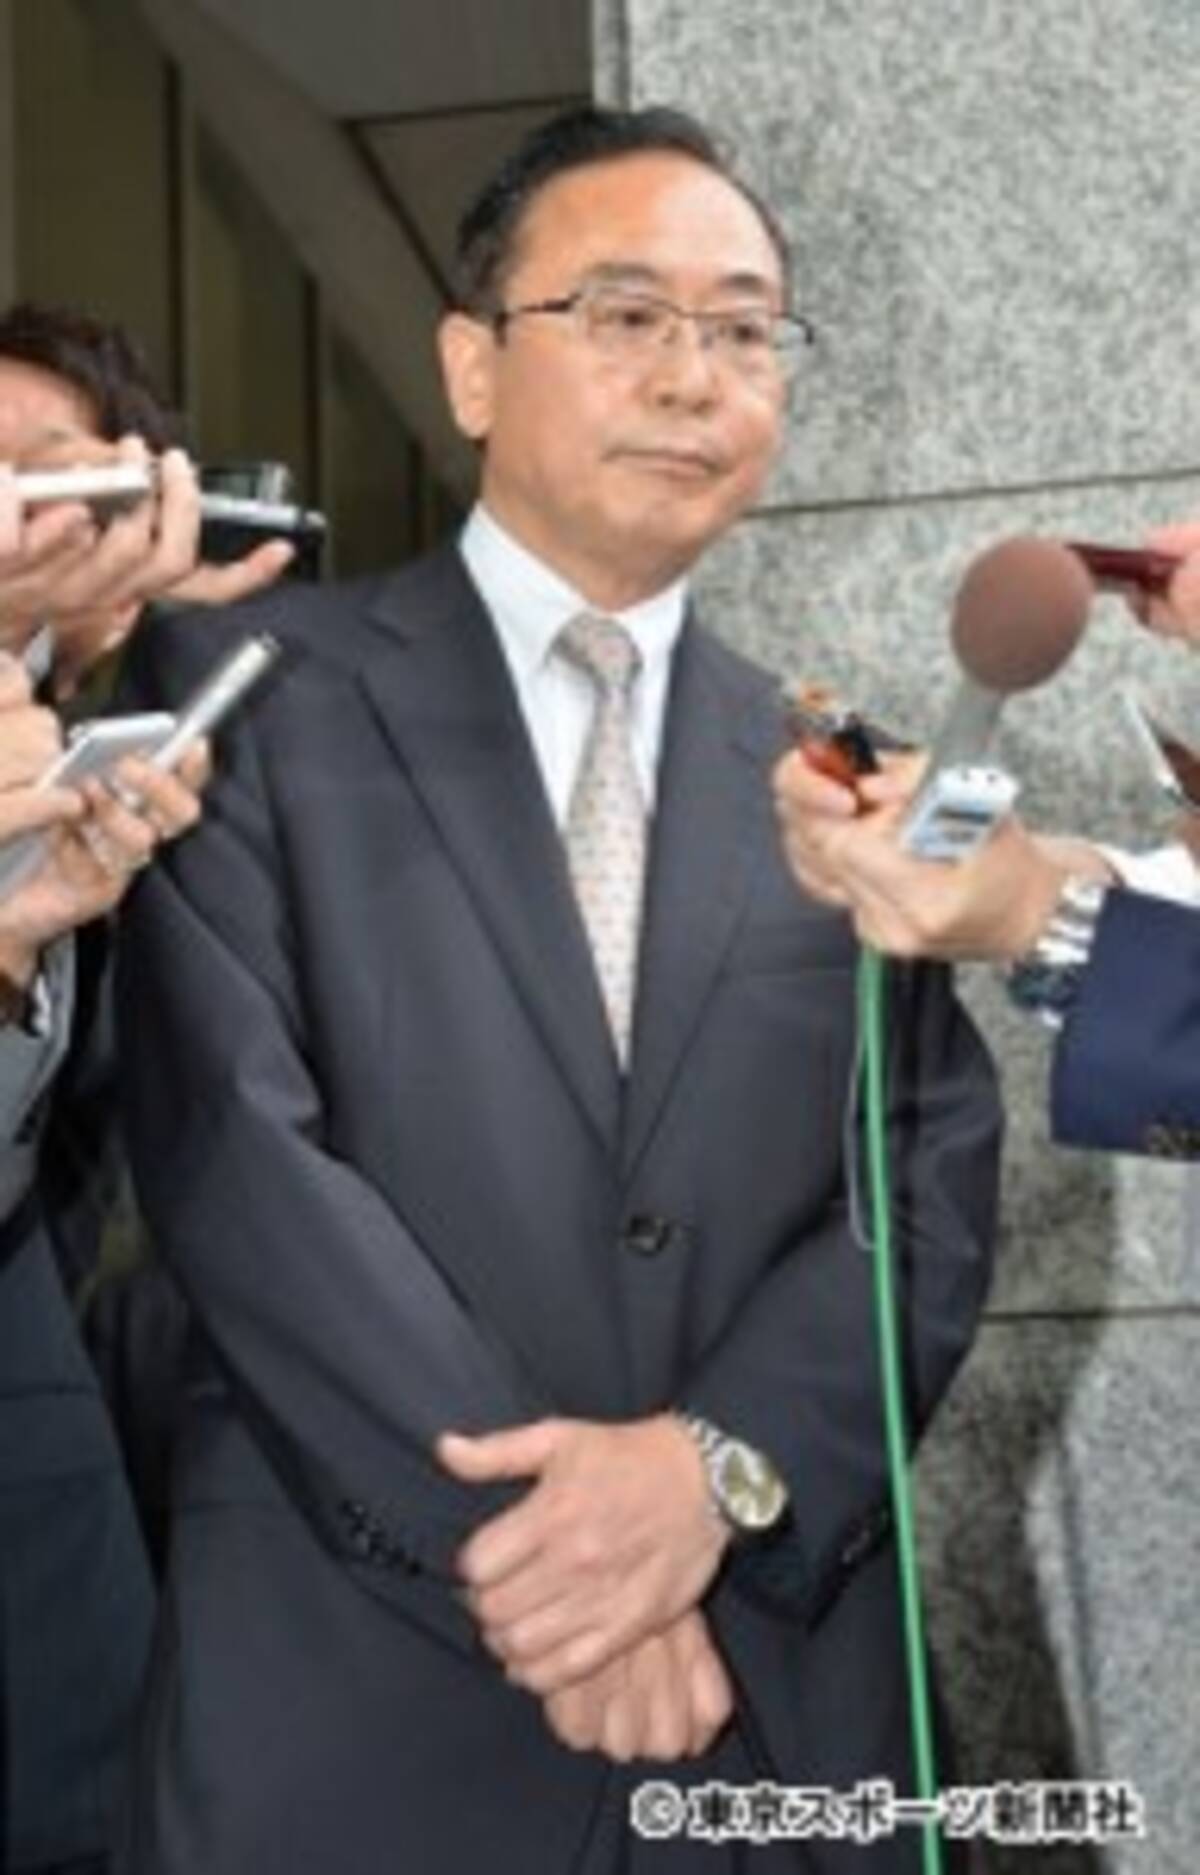 櫻井翔の父 櫻井俊事務次官 都知事選出馬を否定 器ではない 16年6月15日 エキサイトニュース